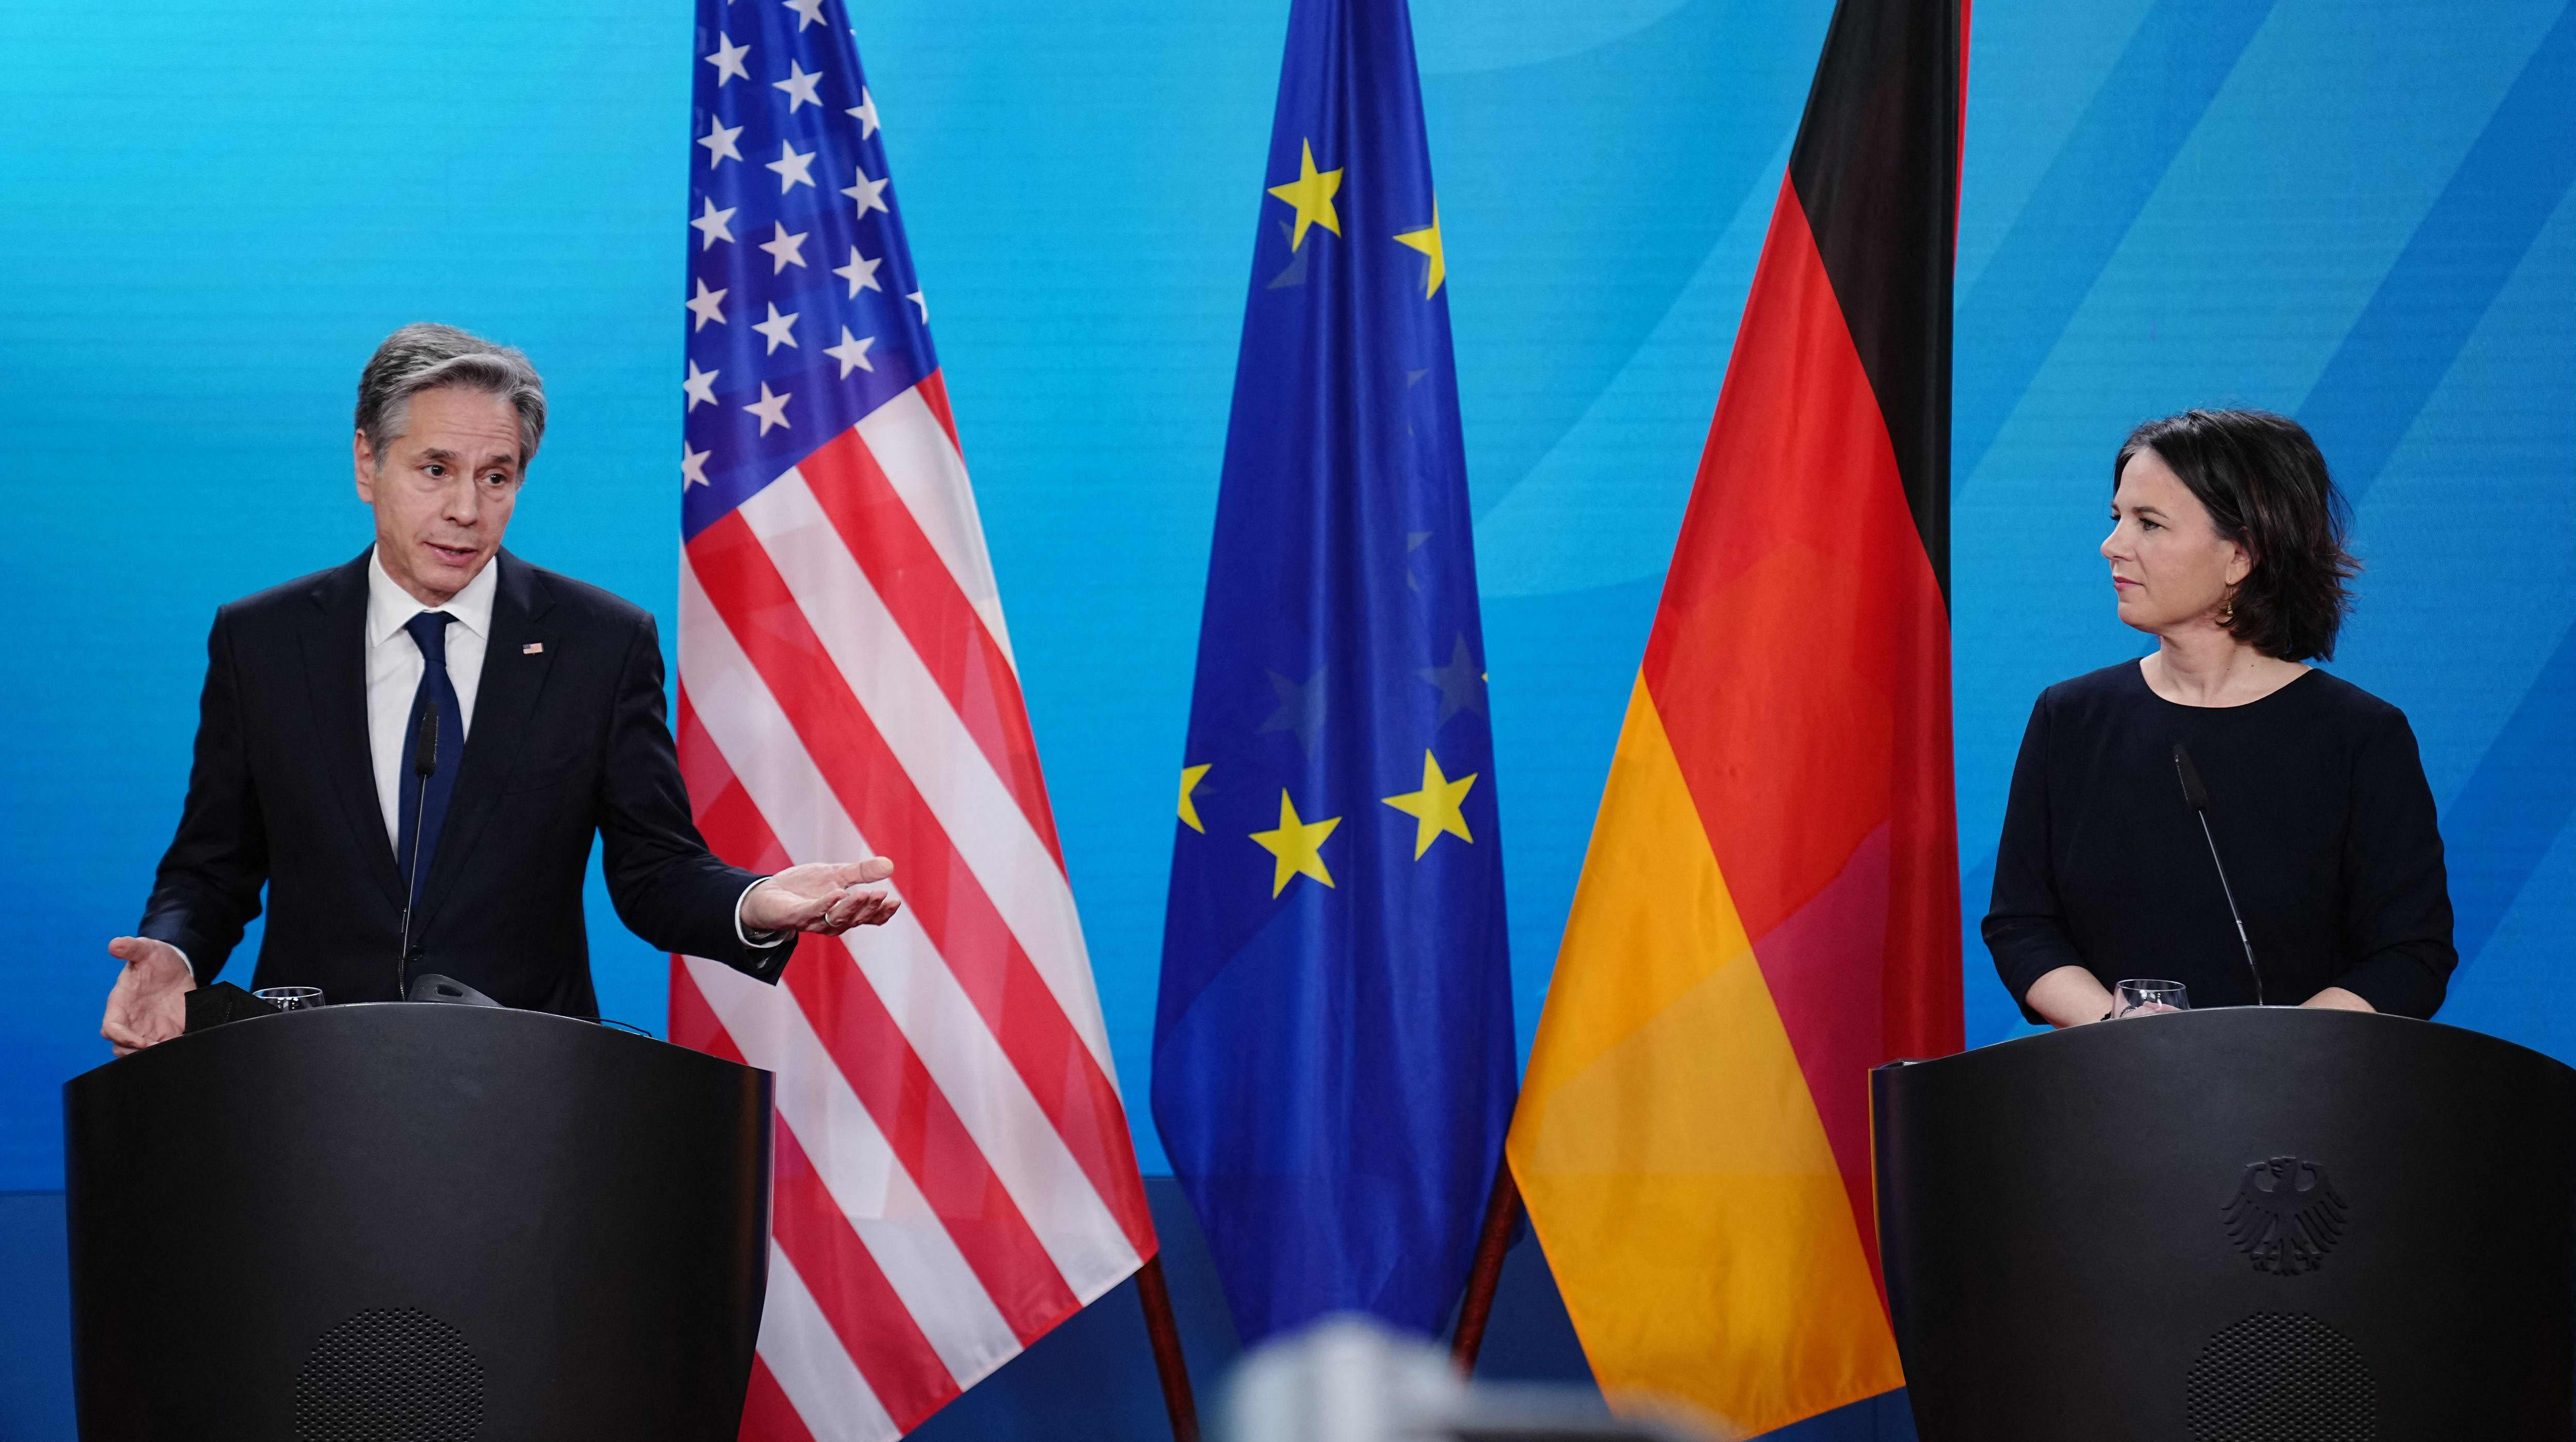 Yhdysvaltain ulkoministeri ja Saksan ulkoministeri tiedotustilaisuudessa, ministeiden välissä Yhdysvaltain, EU:n ja Saksan liput.